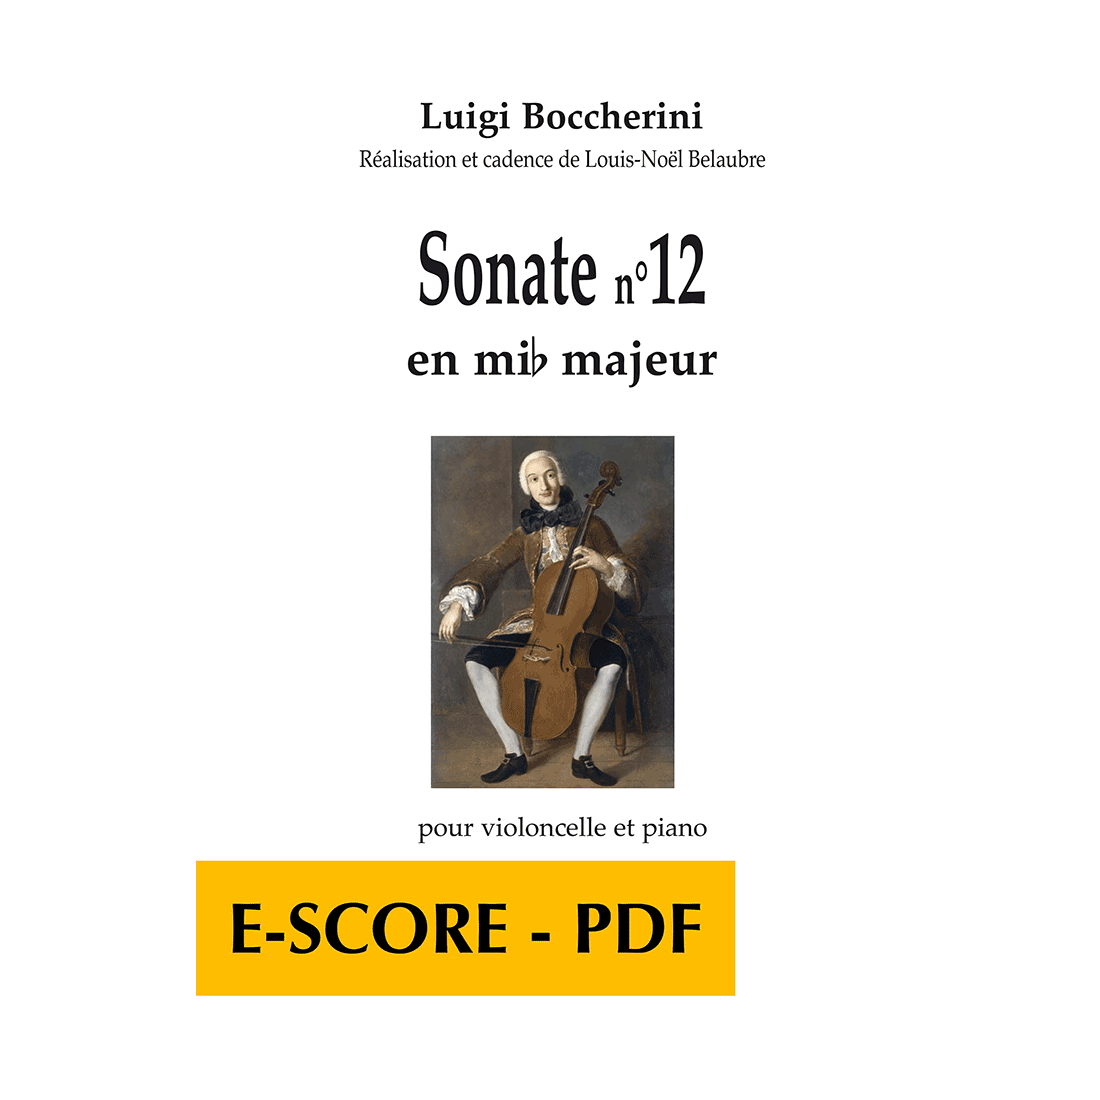 Sonate n°12 en mib majeur pour violoncelle et piano - E-score PDF